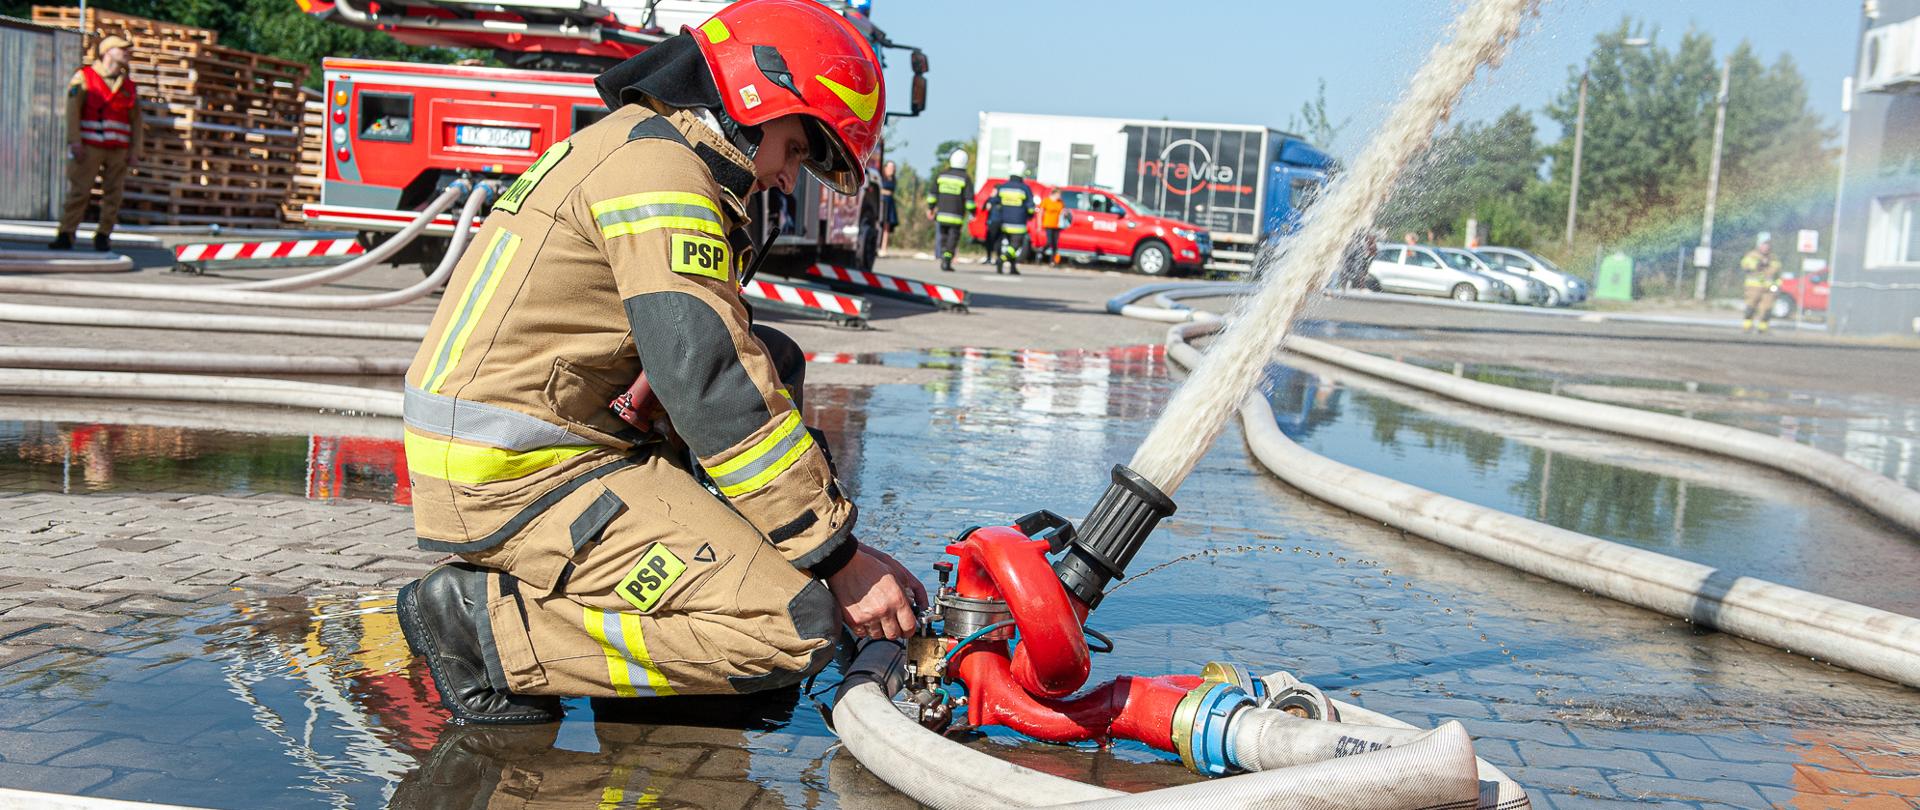 Strażak obsługujący działko wodne na tle samochodu gaśniczego i zakładu.